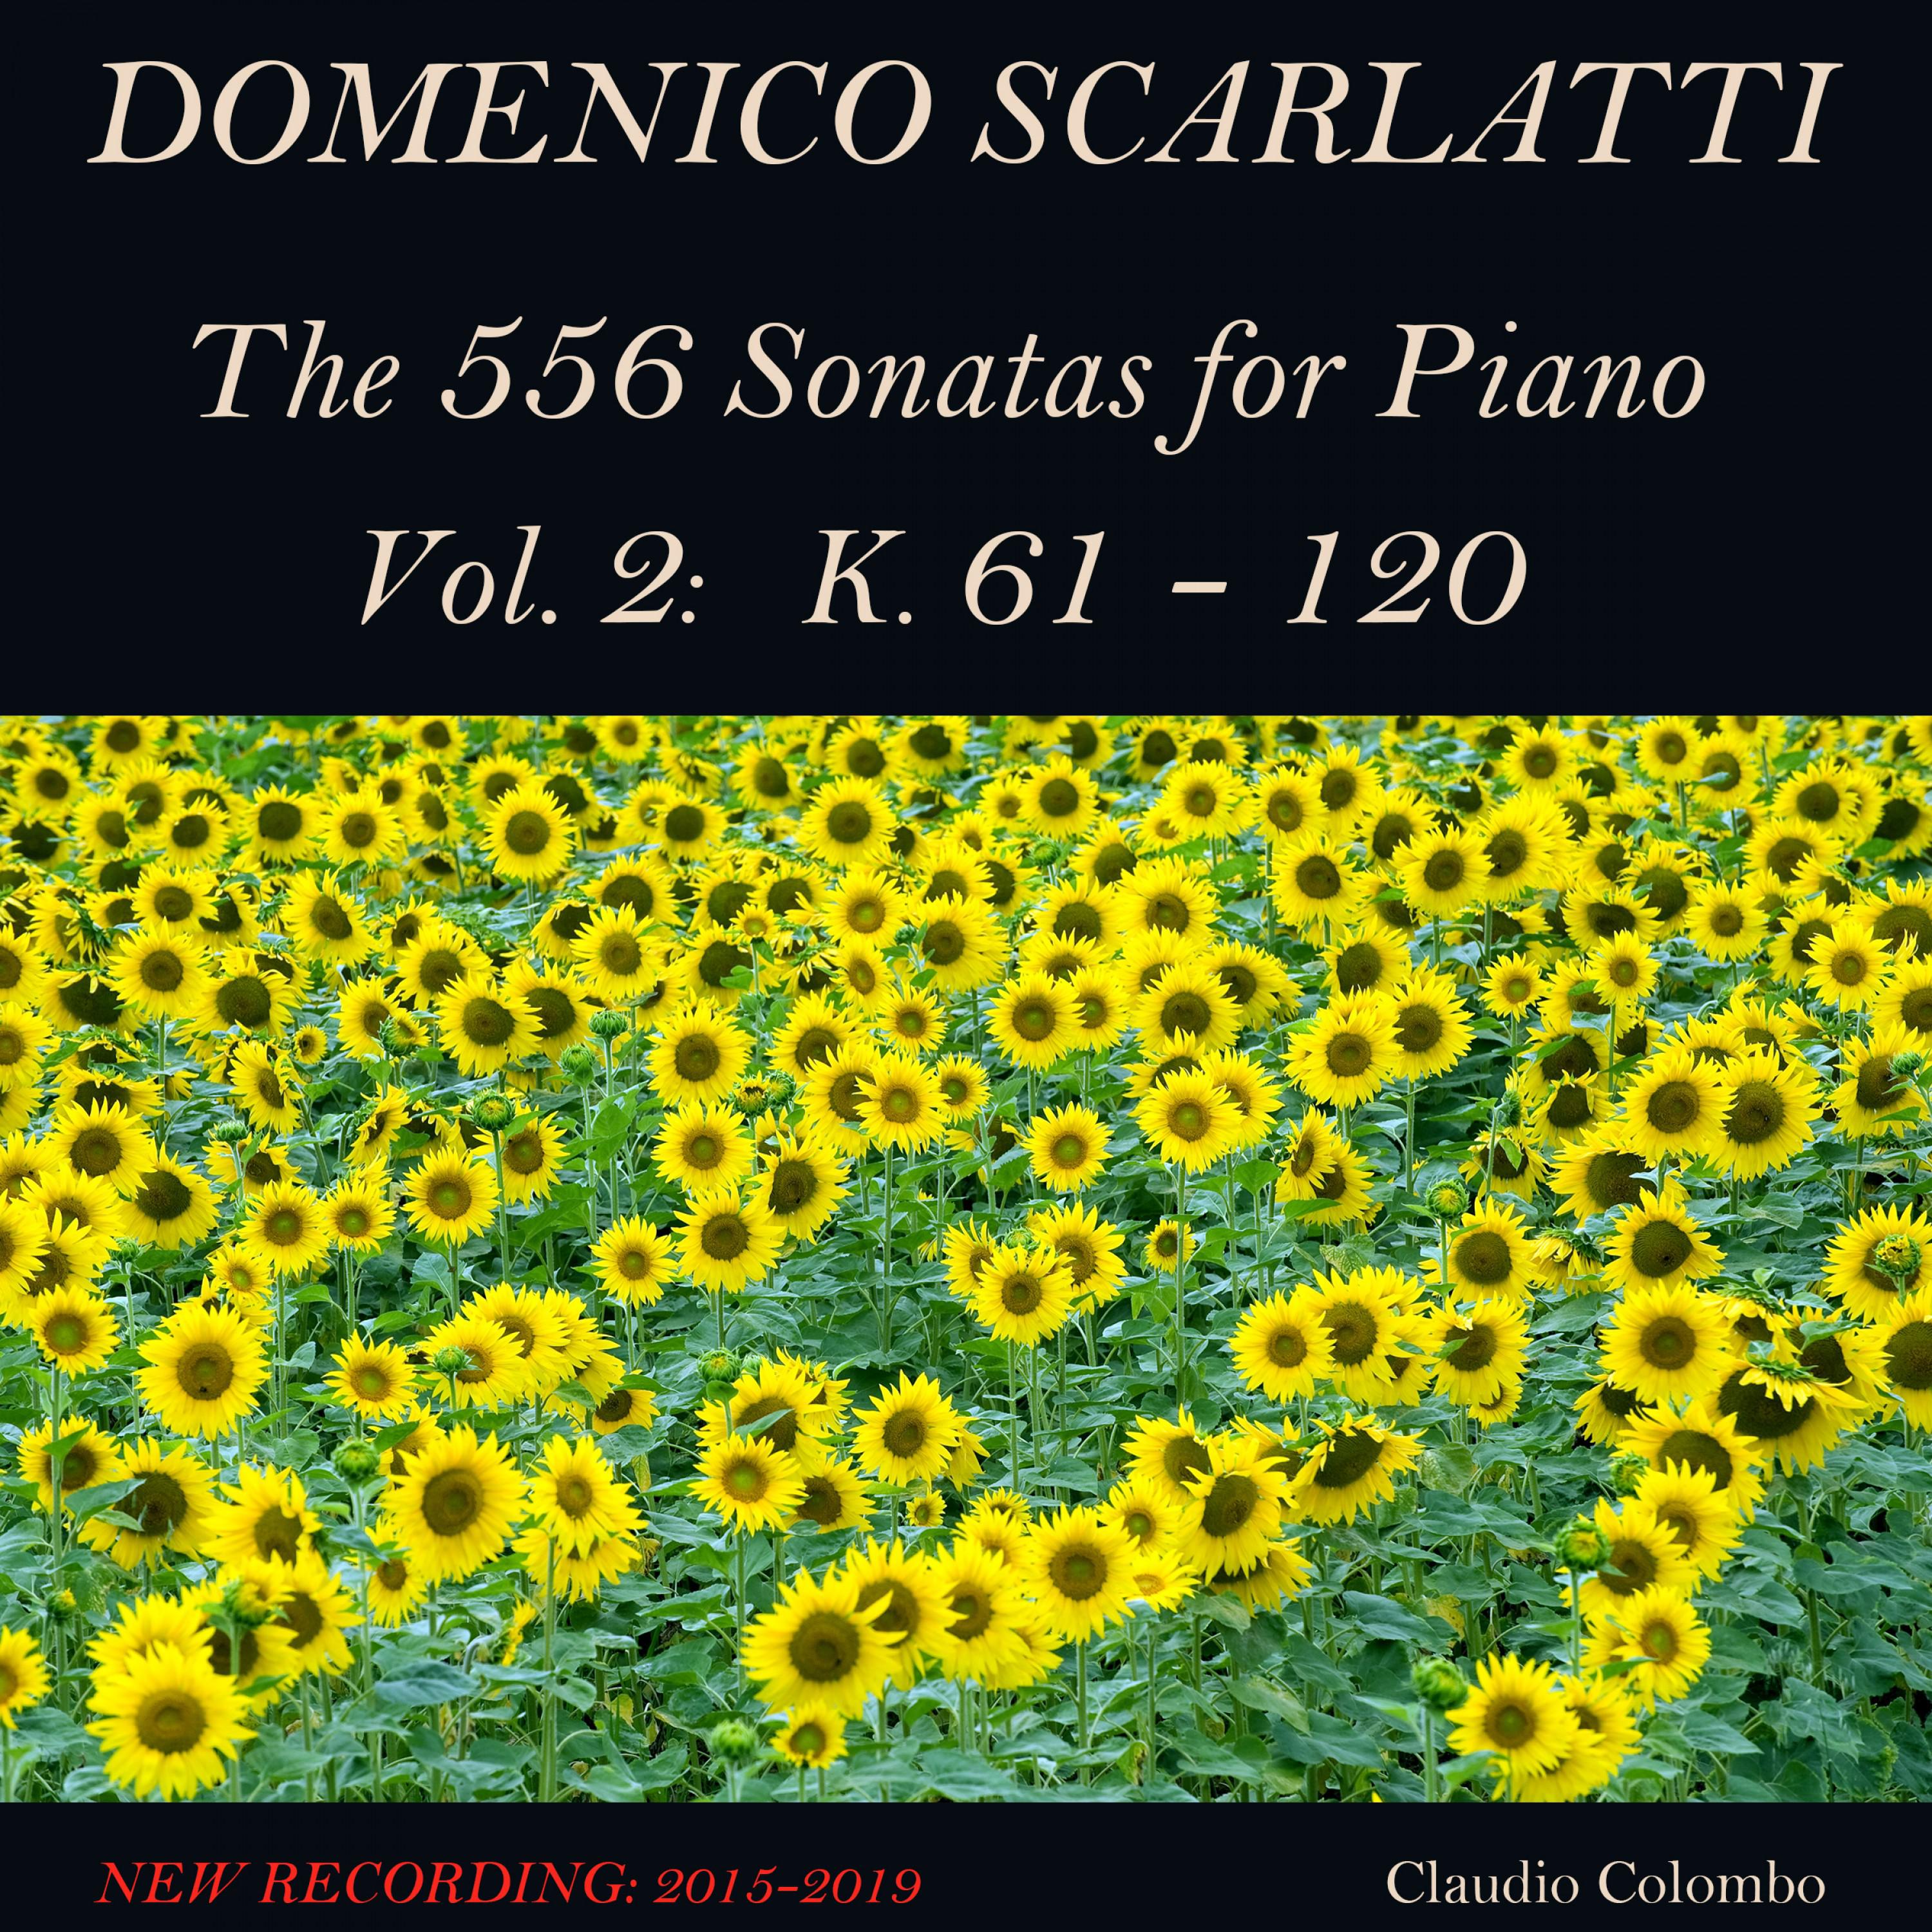 Domenico Scarlatti: The 556 Sonatas for Piano - Vol. 2: K. 61 - 120